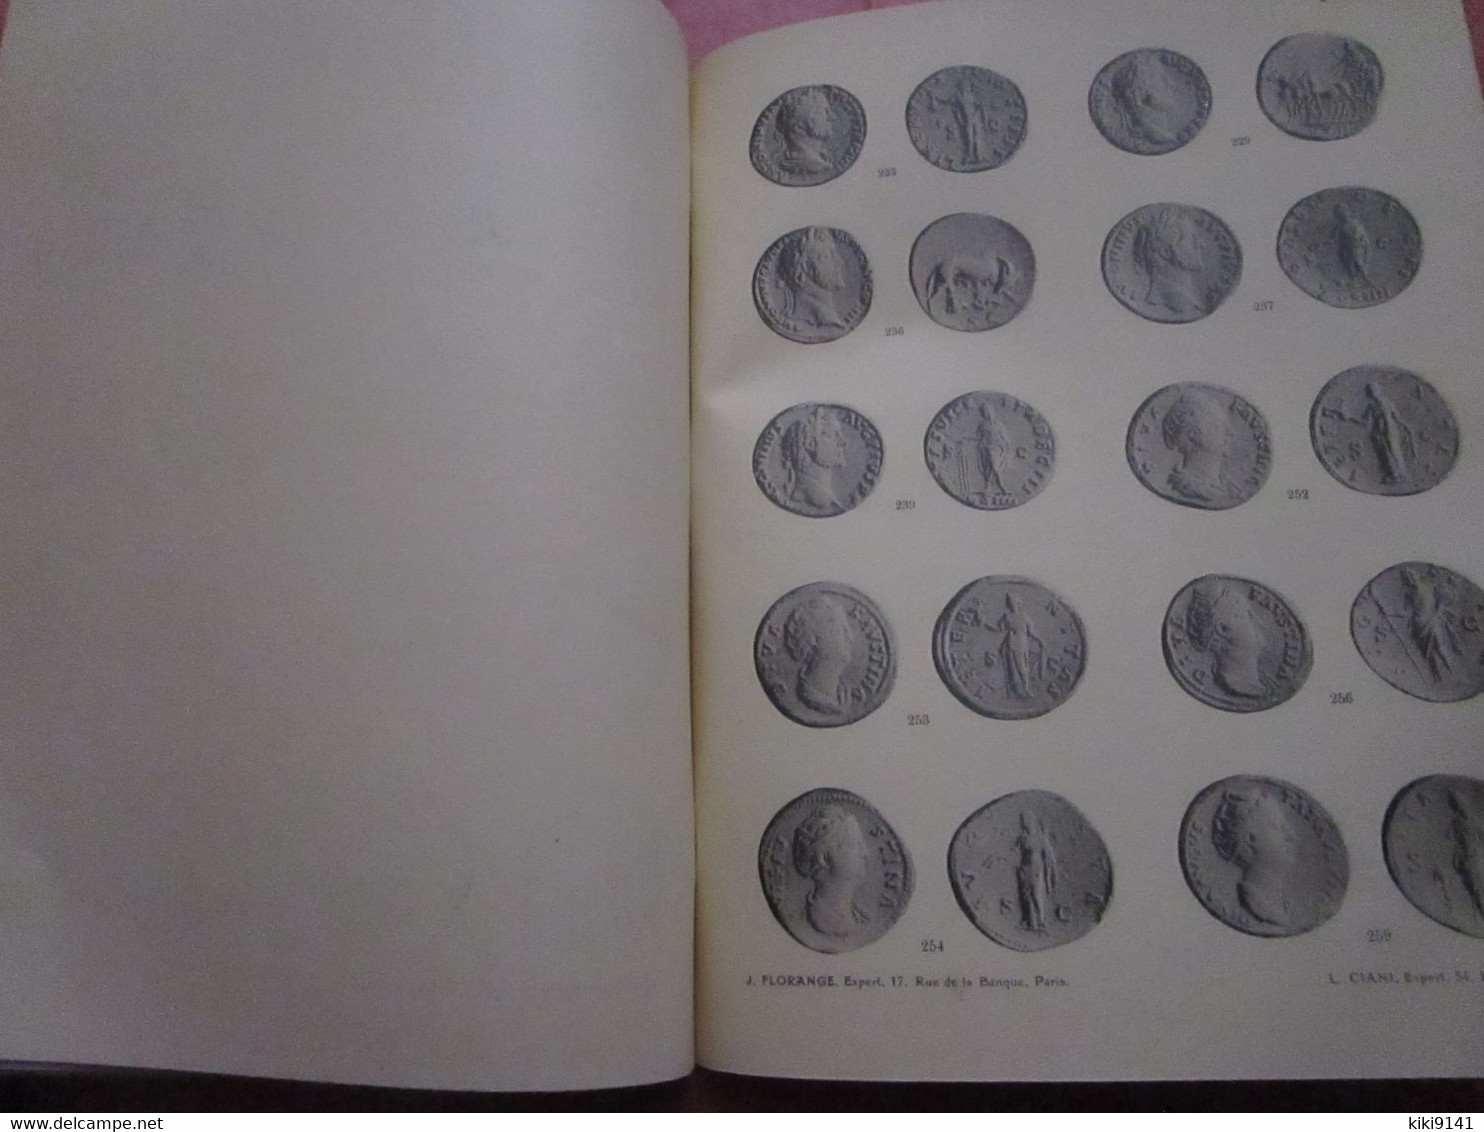 MONNAIES ROMAINES - MONNAIES BYZANTINES - Catalogue 36 pages descriptives + 12 Planches illustrées